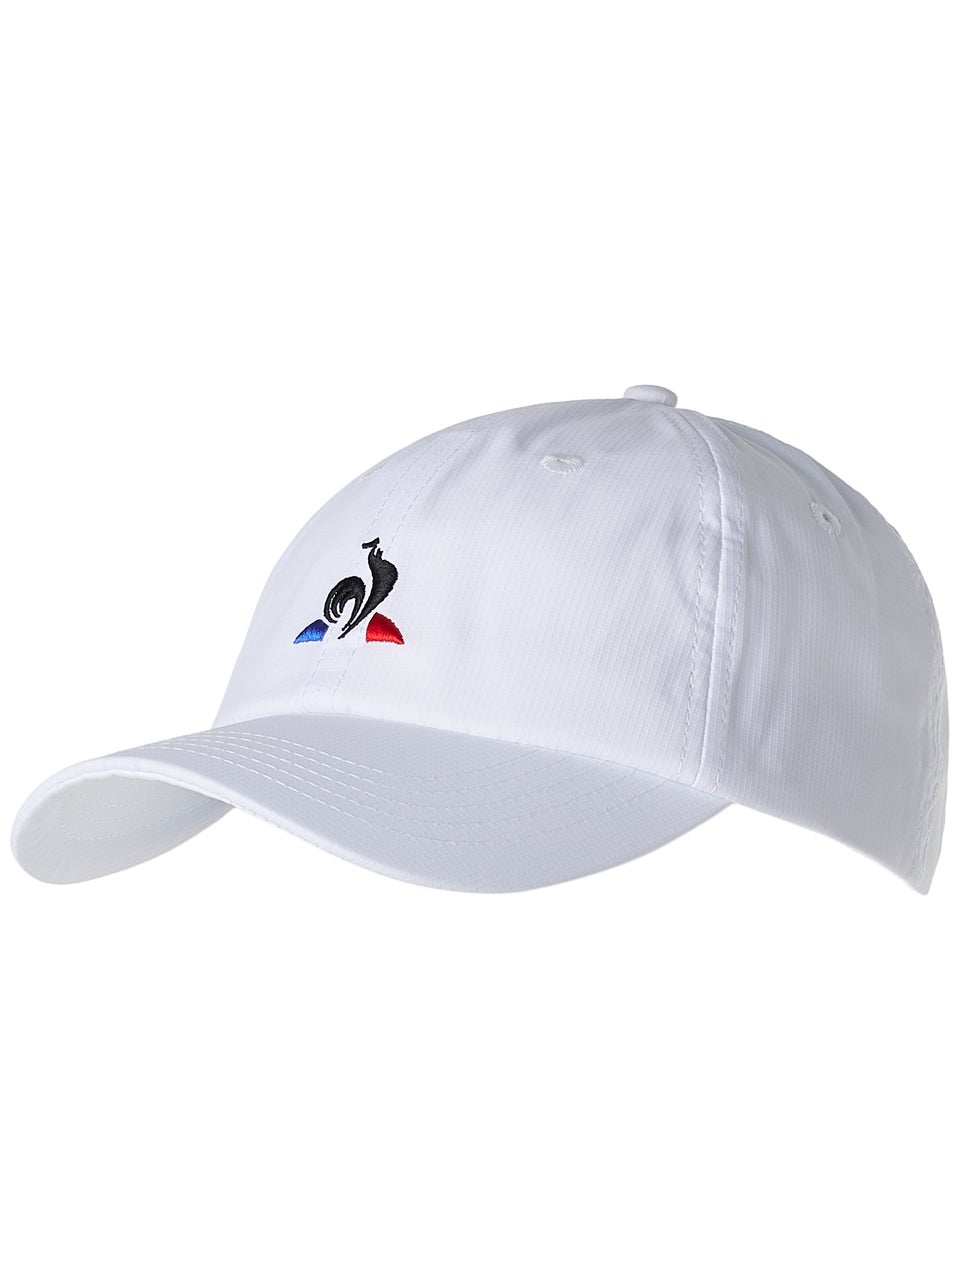 Le Coq Sportif Men's Tennis Hat - White | Tennis Warehouse